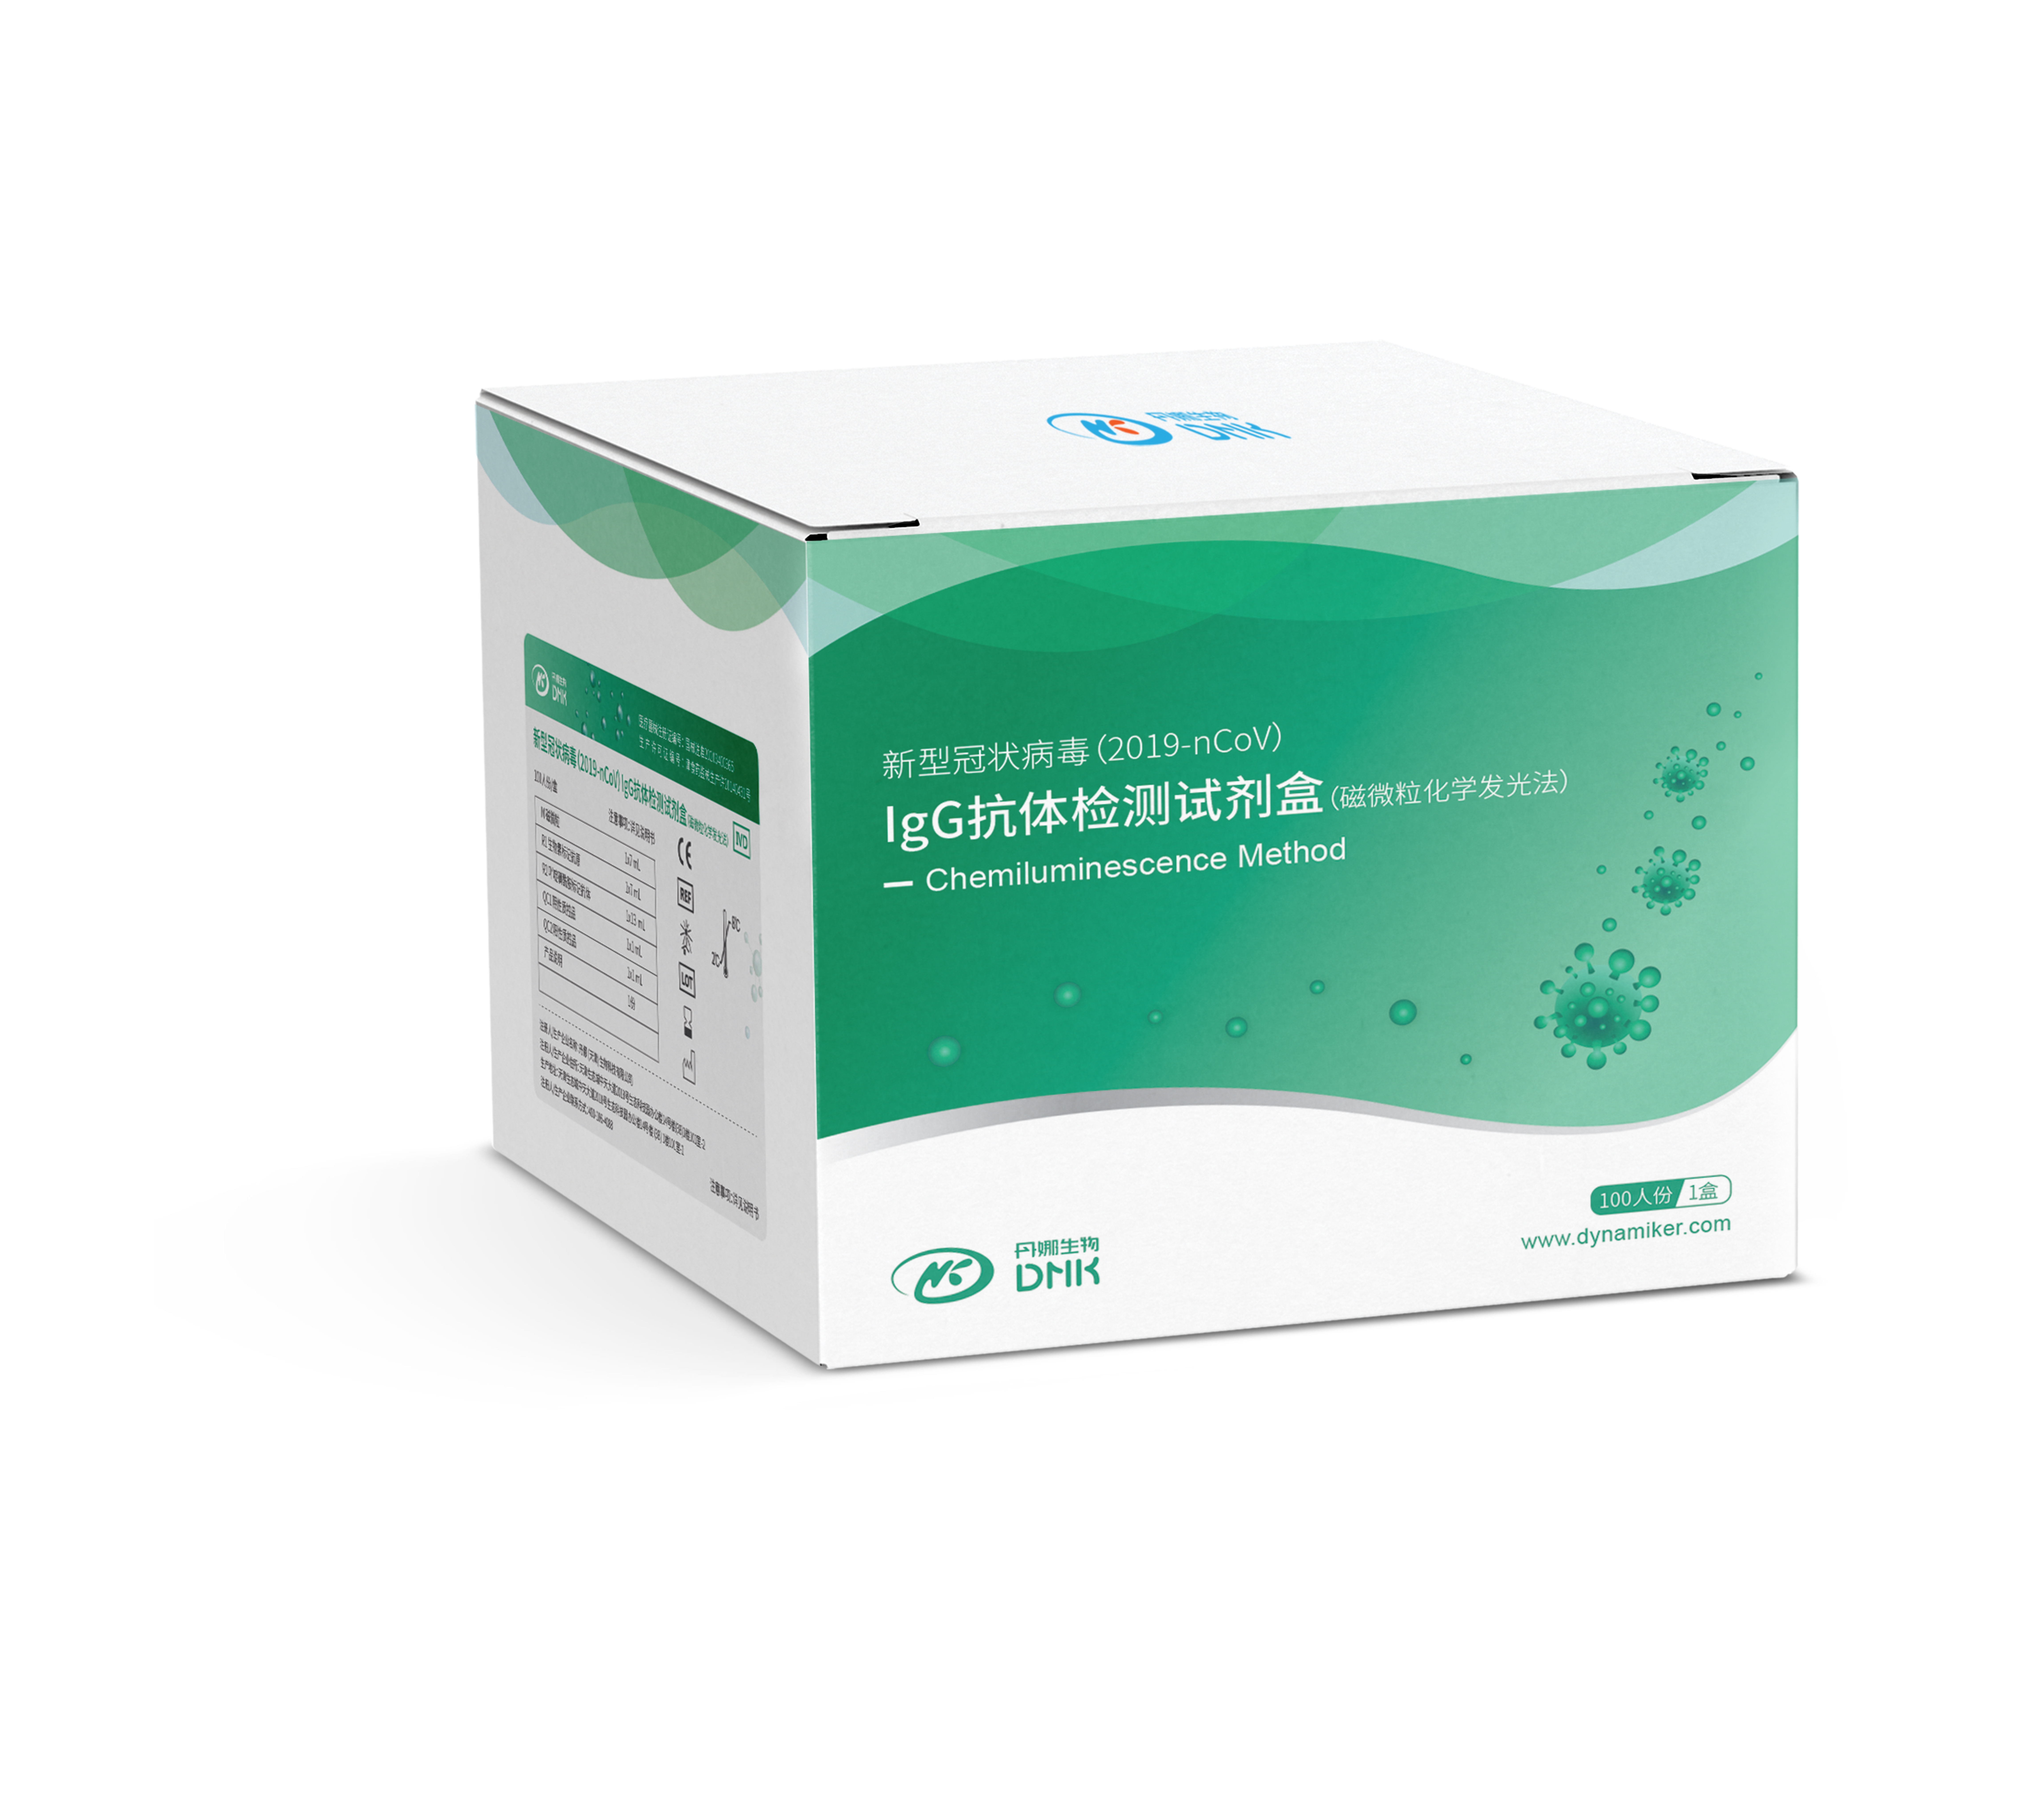 【丹娜】新型冠状病毒(2019-nCoV)IgG抗体检测试剂盒(磁微粒化学发光法)